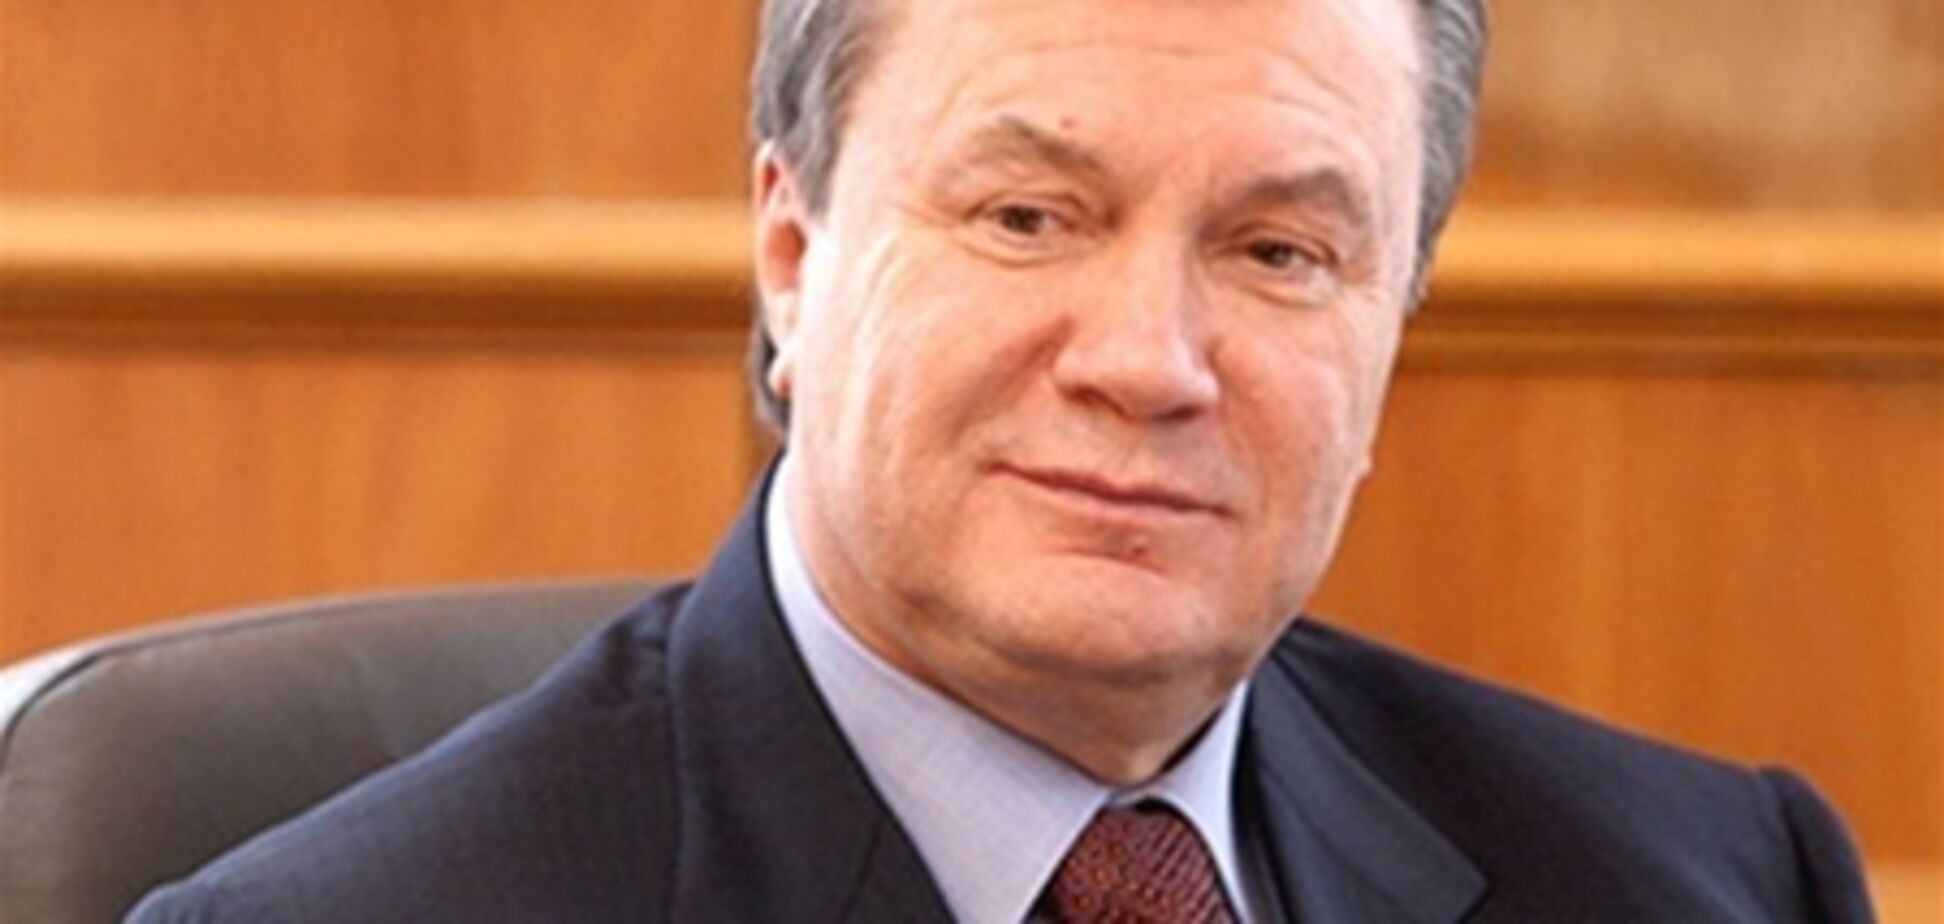 Янукович встретился с президентами Польши и Словакии